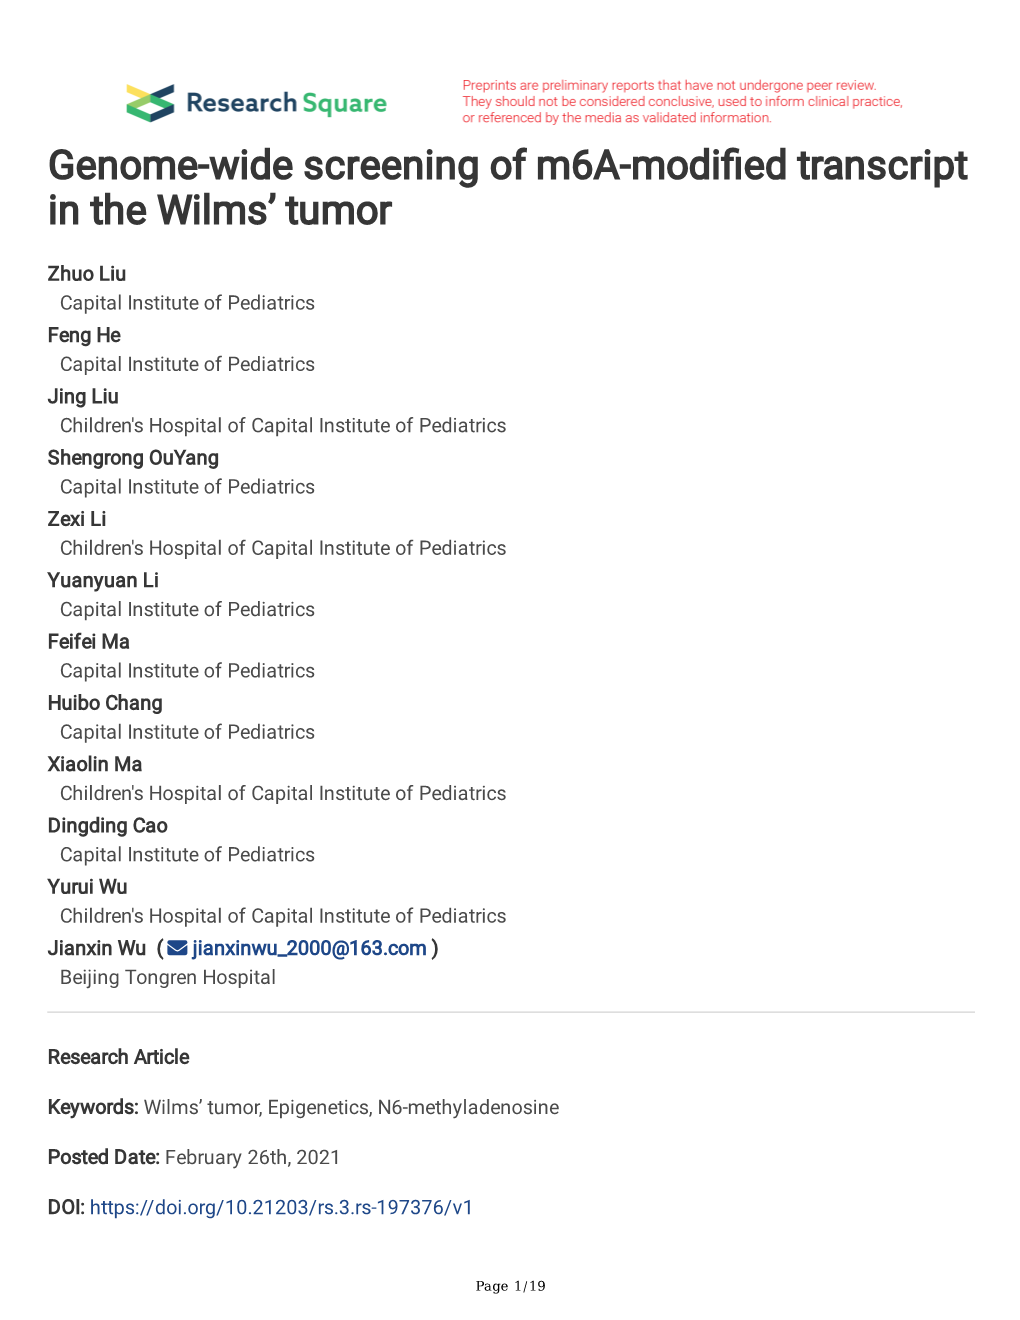 Genome-Wide Screening of M6a-Modi Ed Transcript in the Wilms' Tumor